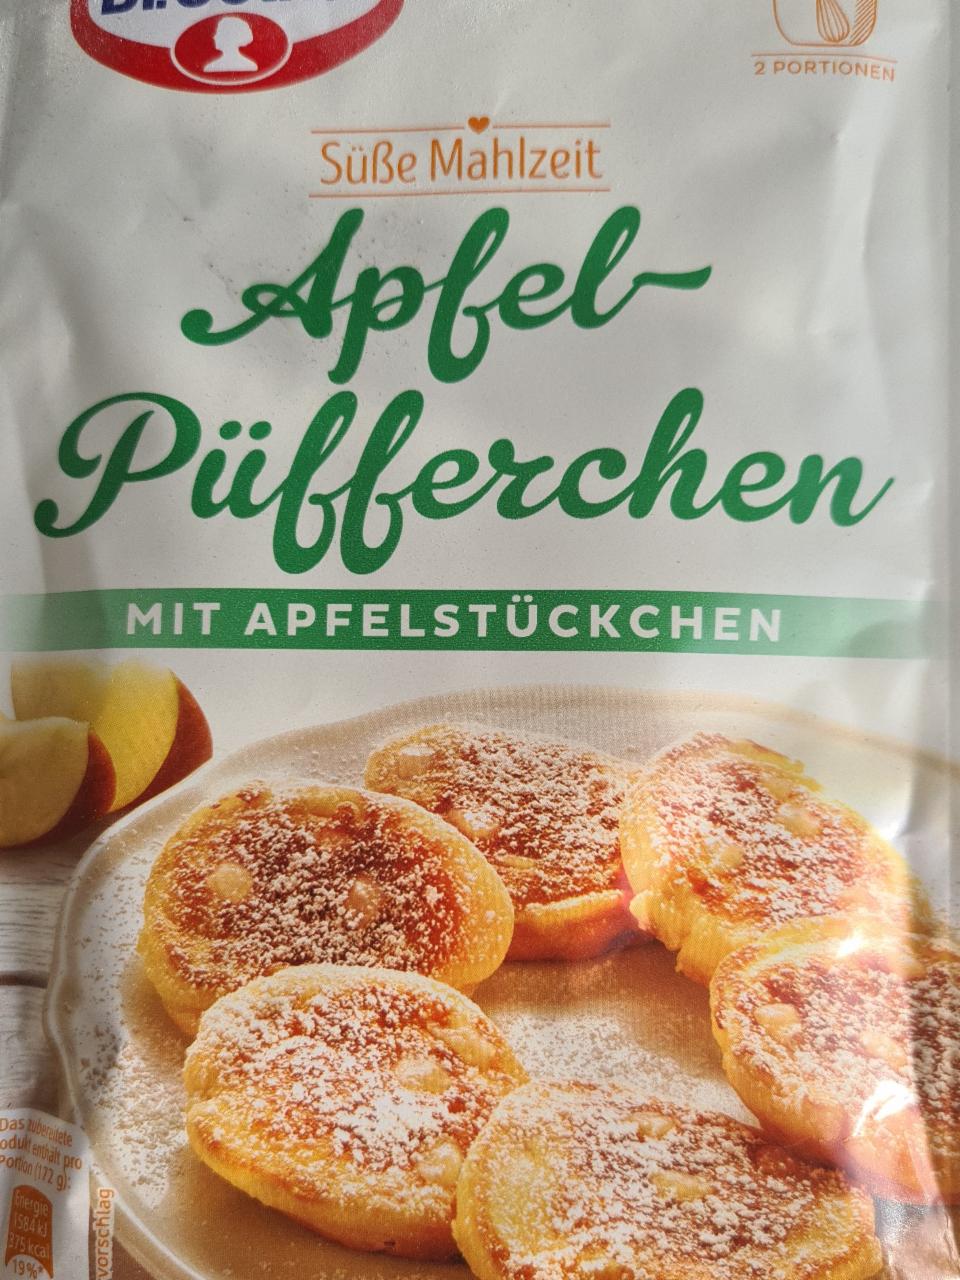 Fotografie - Apfel-Puefferchen mit Apfelstückchen Dr.Oetker